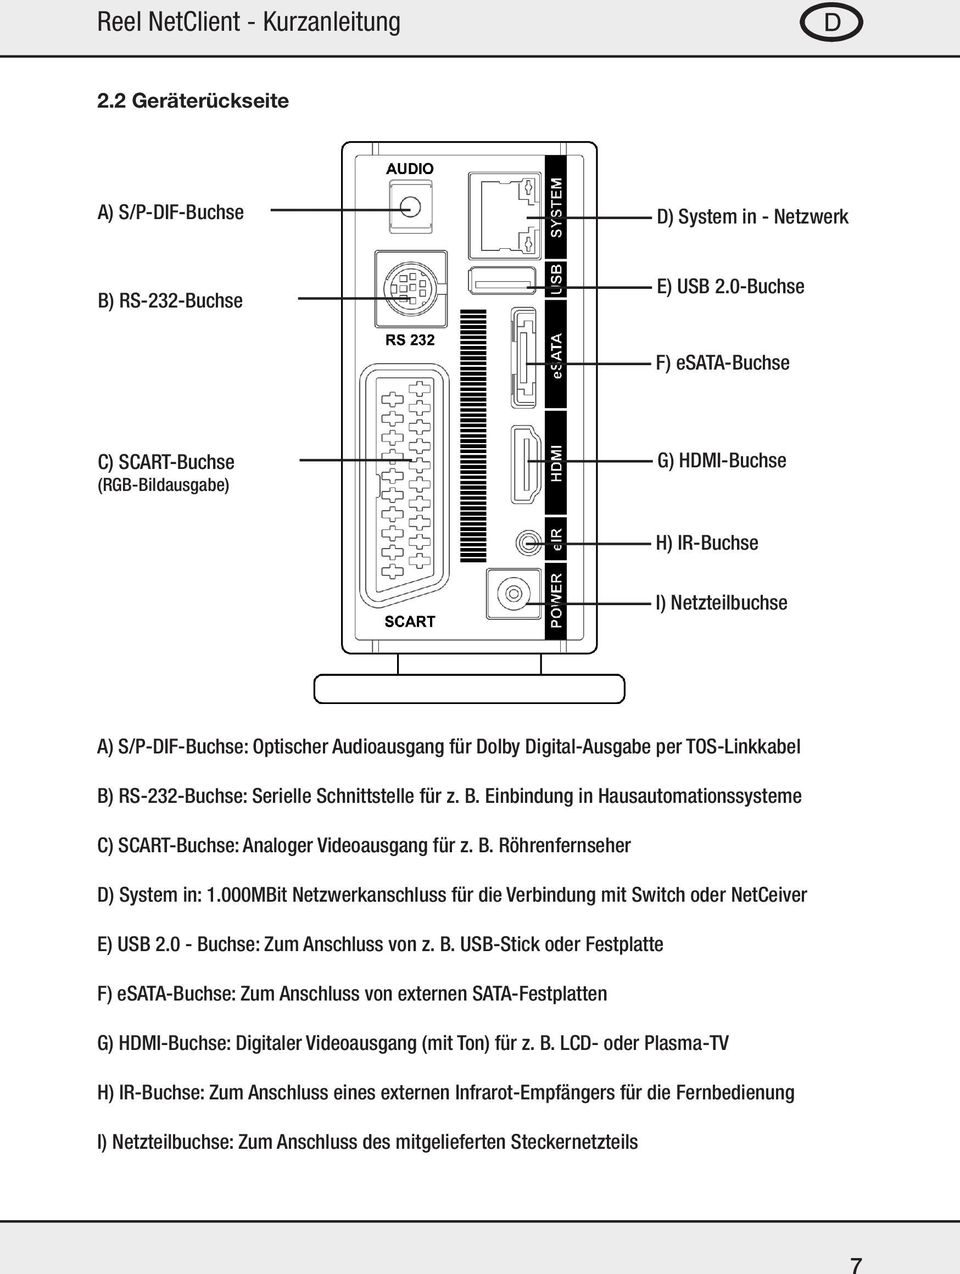 RS-232-Buchse: Serielle Schnittstelle für z. B. Einbindung in Hausautomationssysteme C) SCART-Buchse: Analoger Videoausgang für z. B. Röhrenfernseher D) System in: 1.